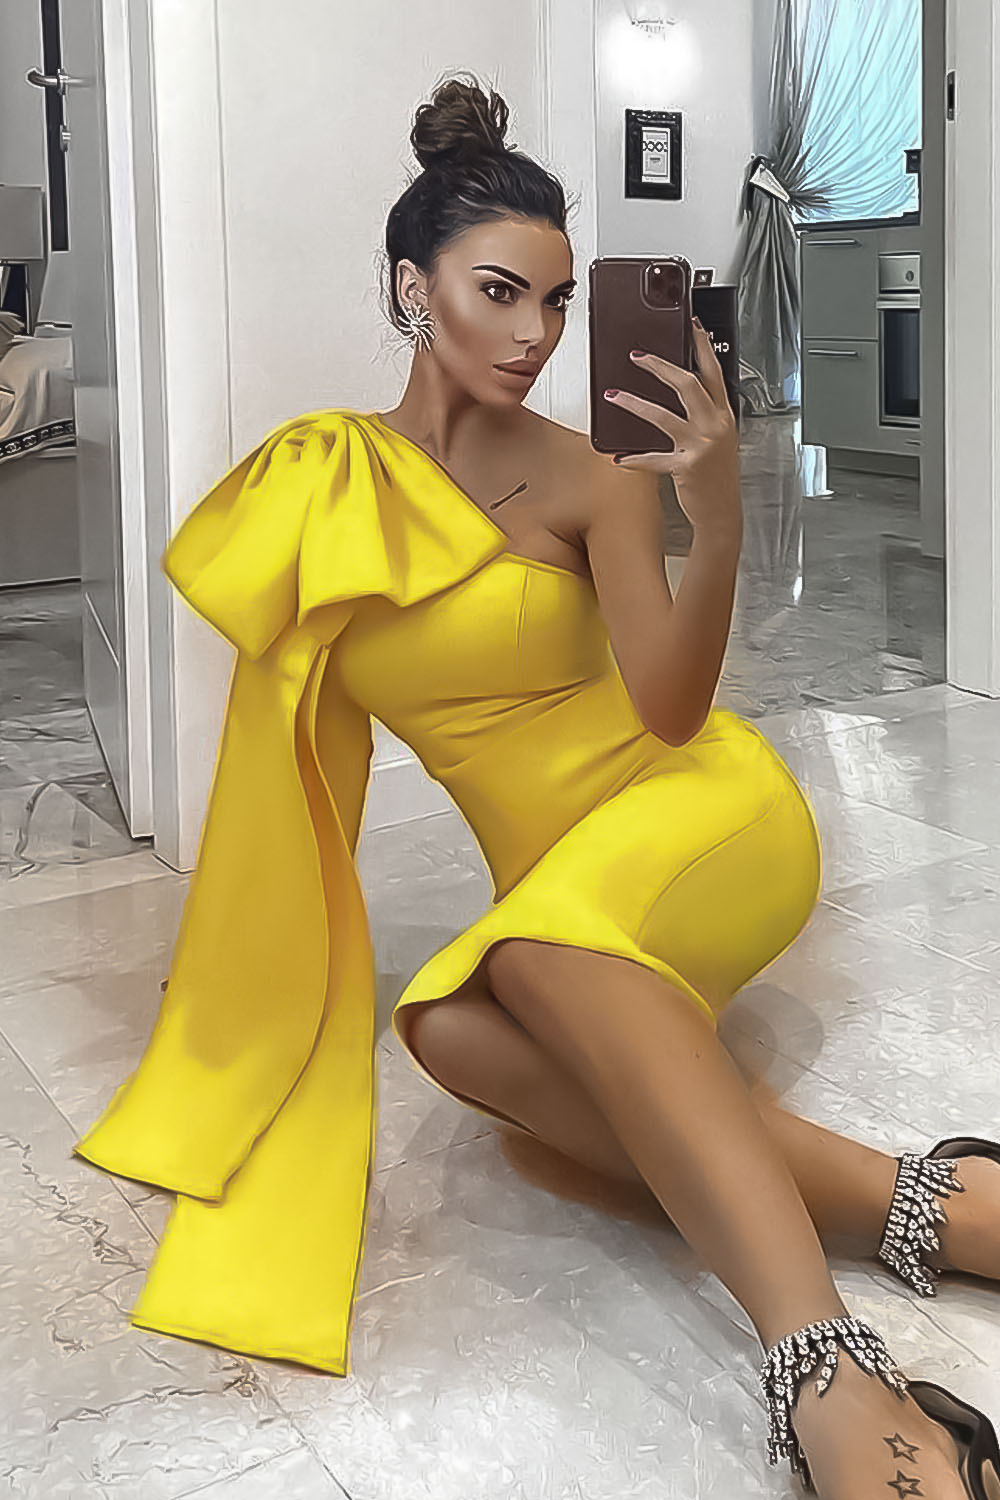 Μονόχρωμο φόρεμα με διακοσμητικό φιόγκο - Κίτρινο